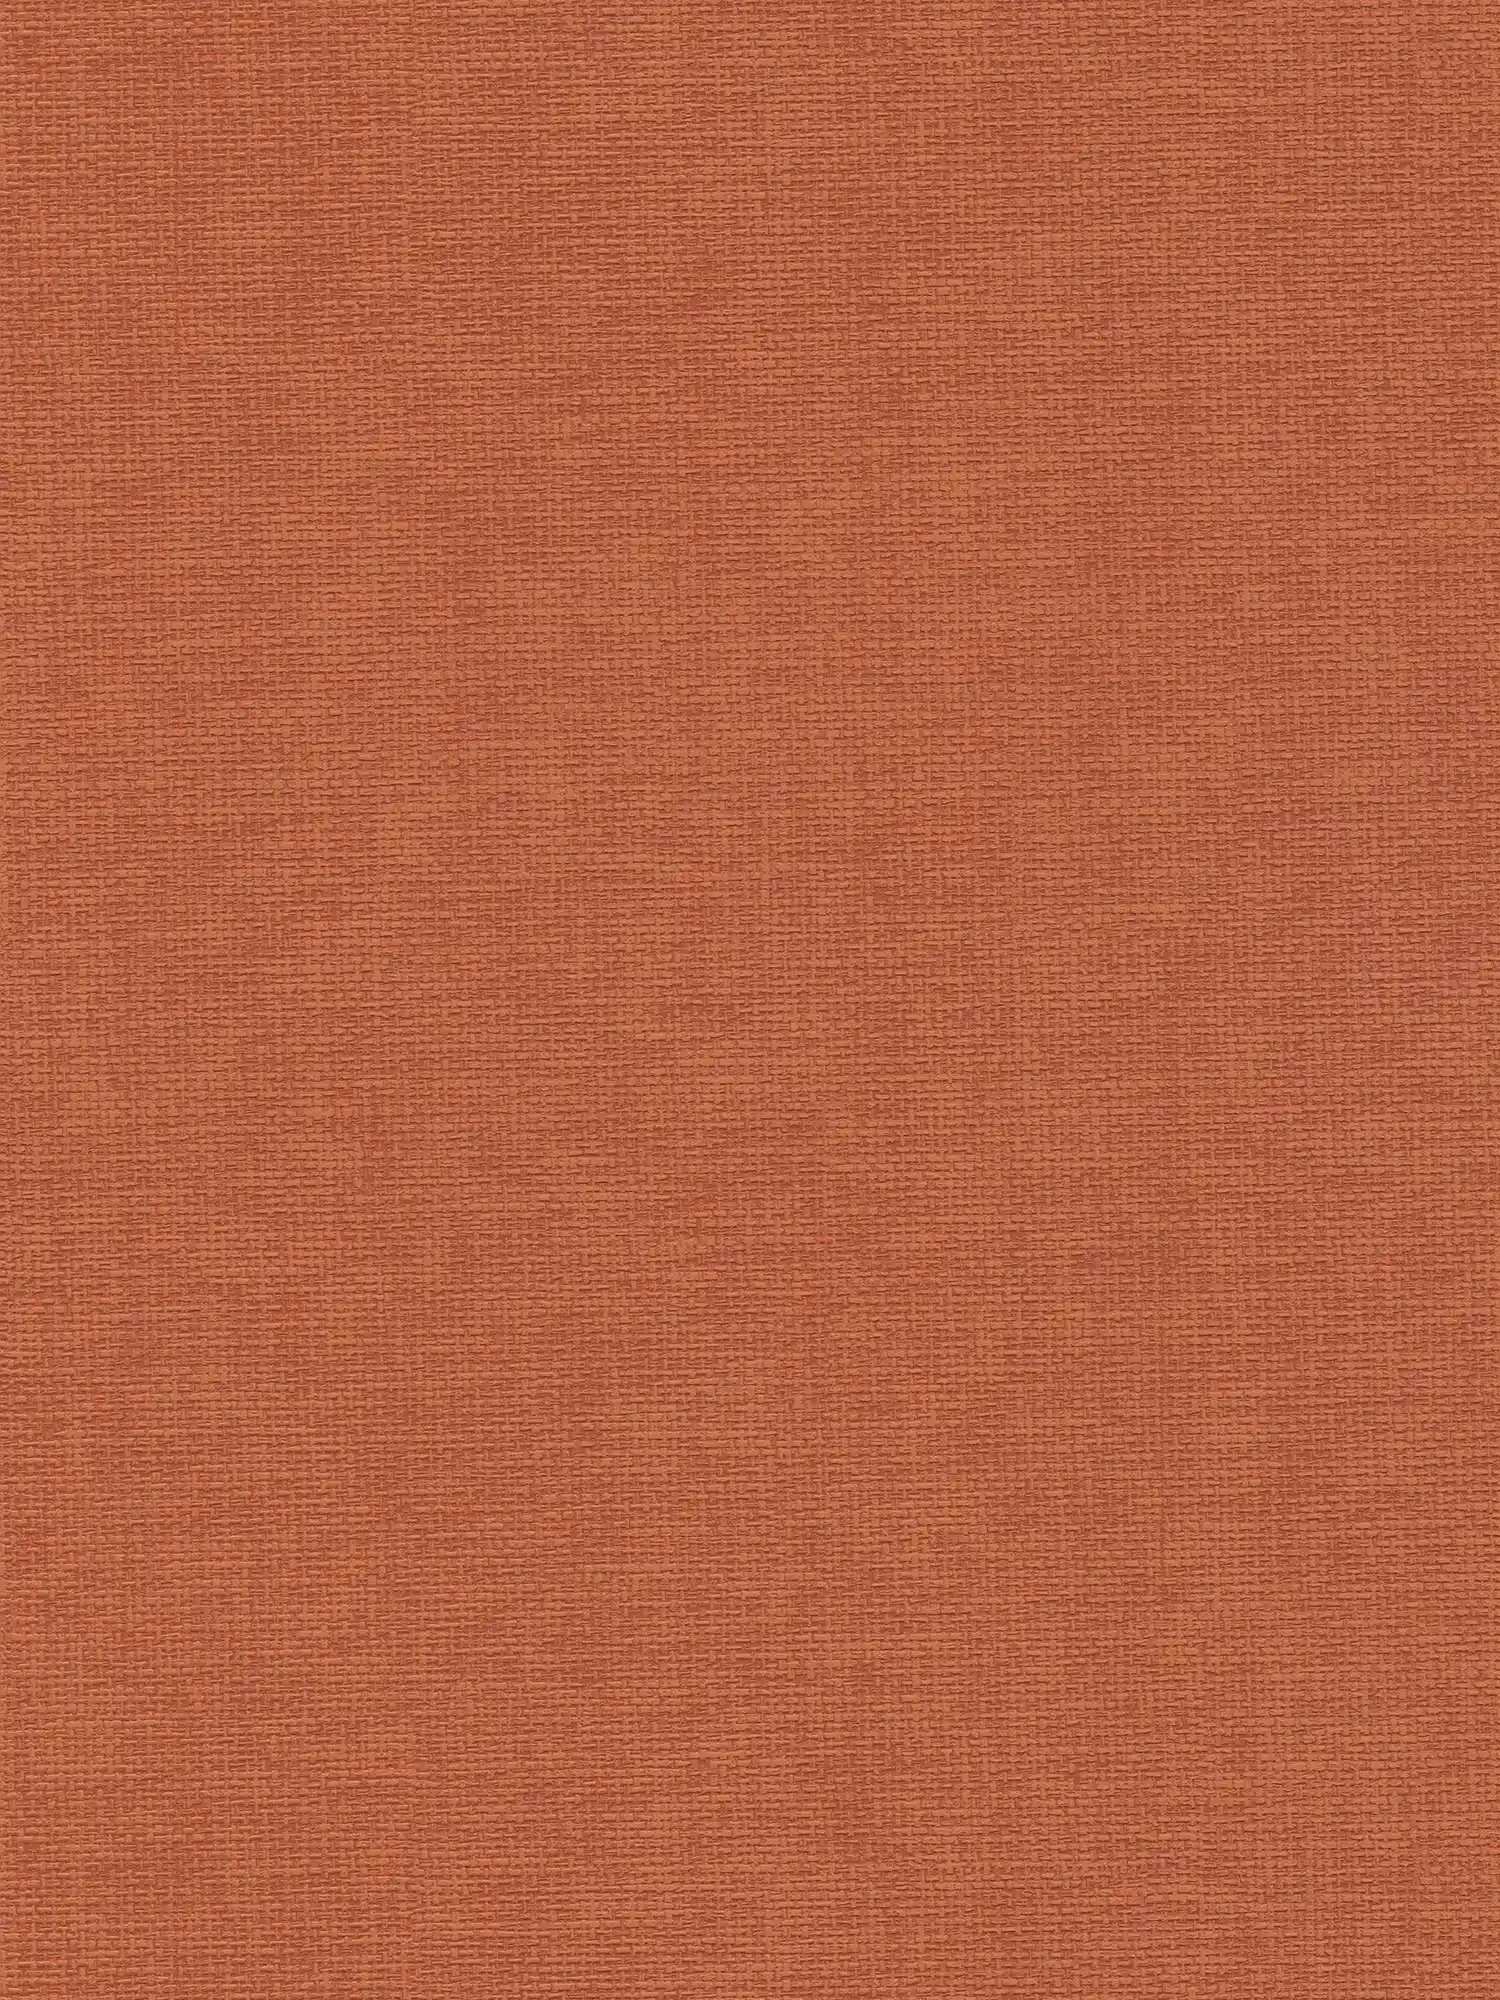 Papel pintado rojo anaranjado con estructura textil - rojo
